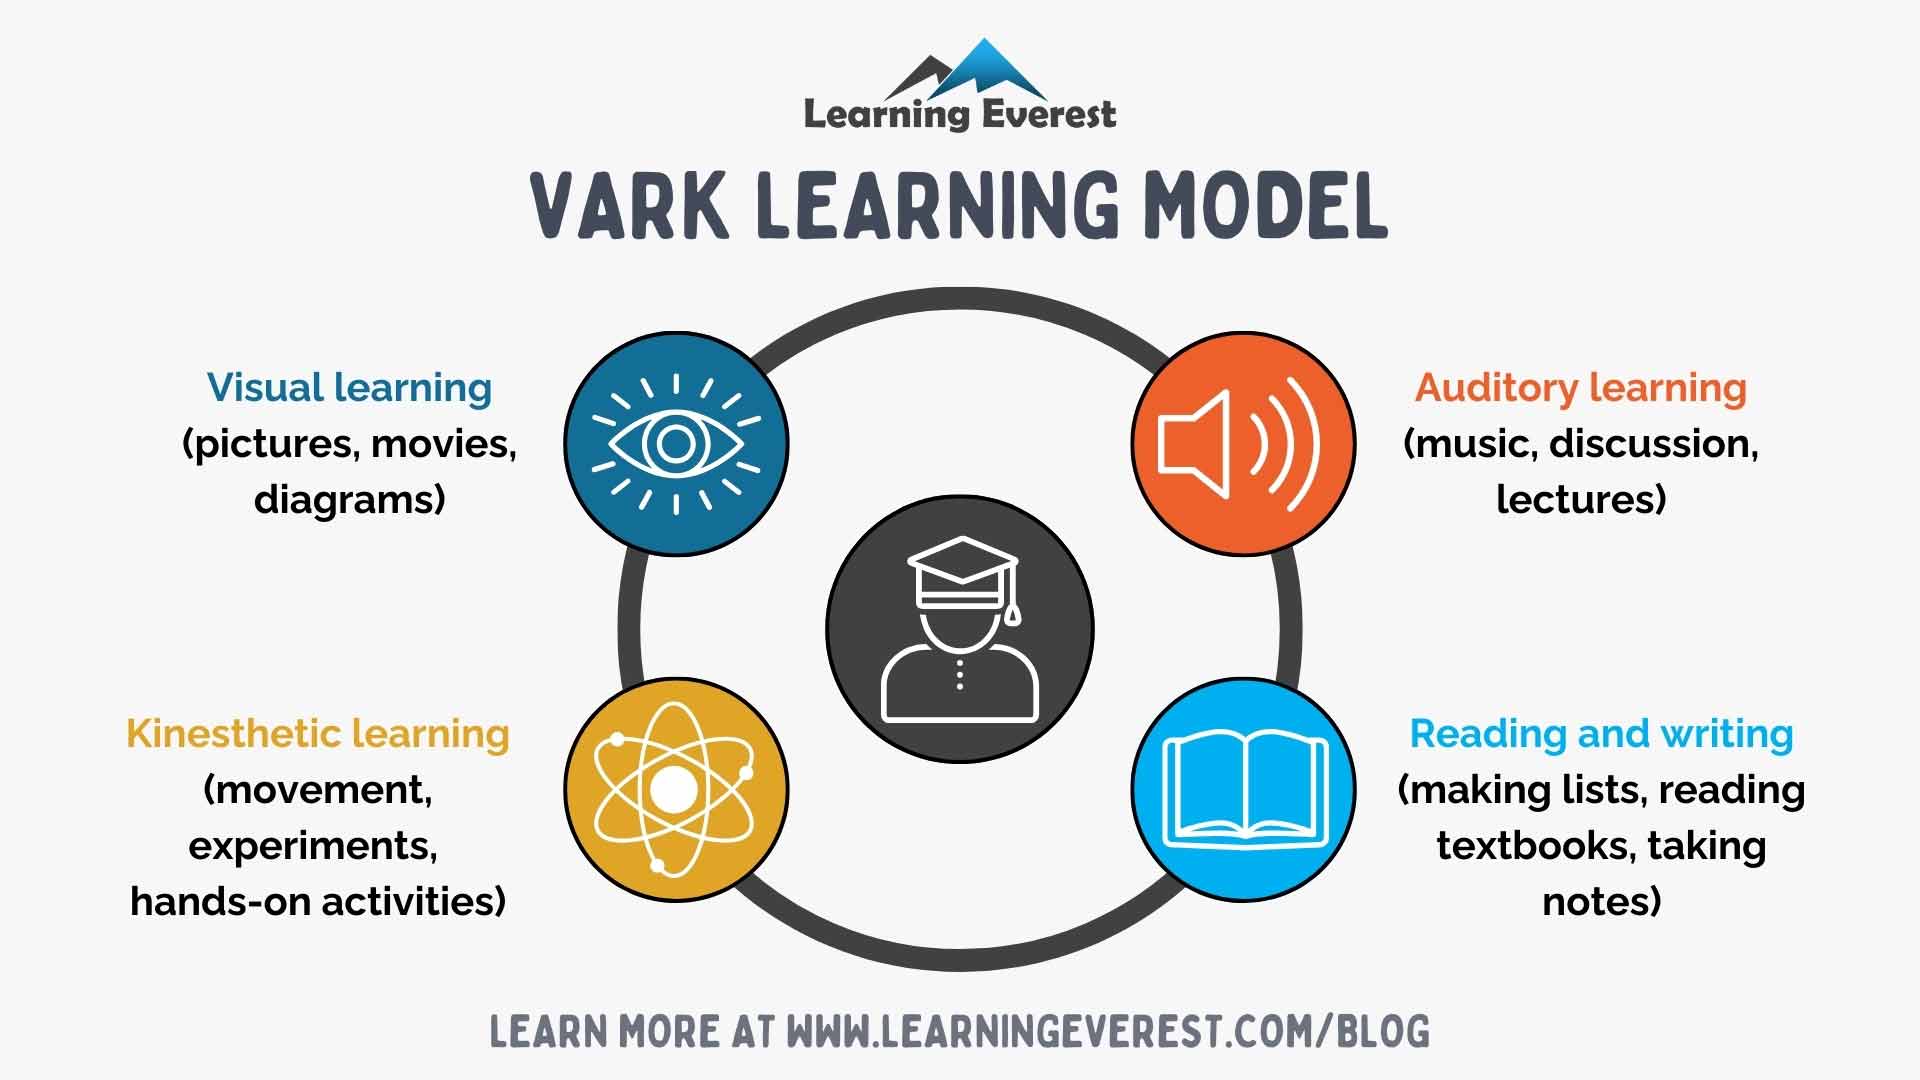 VARK Learning Model